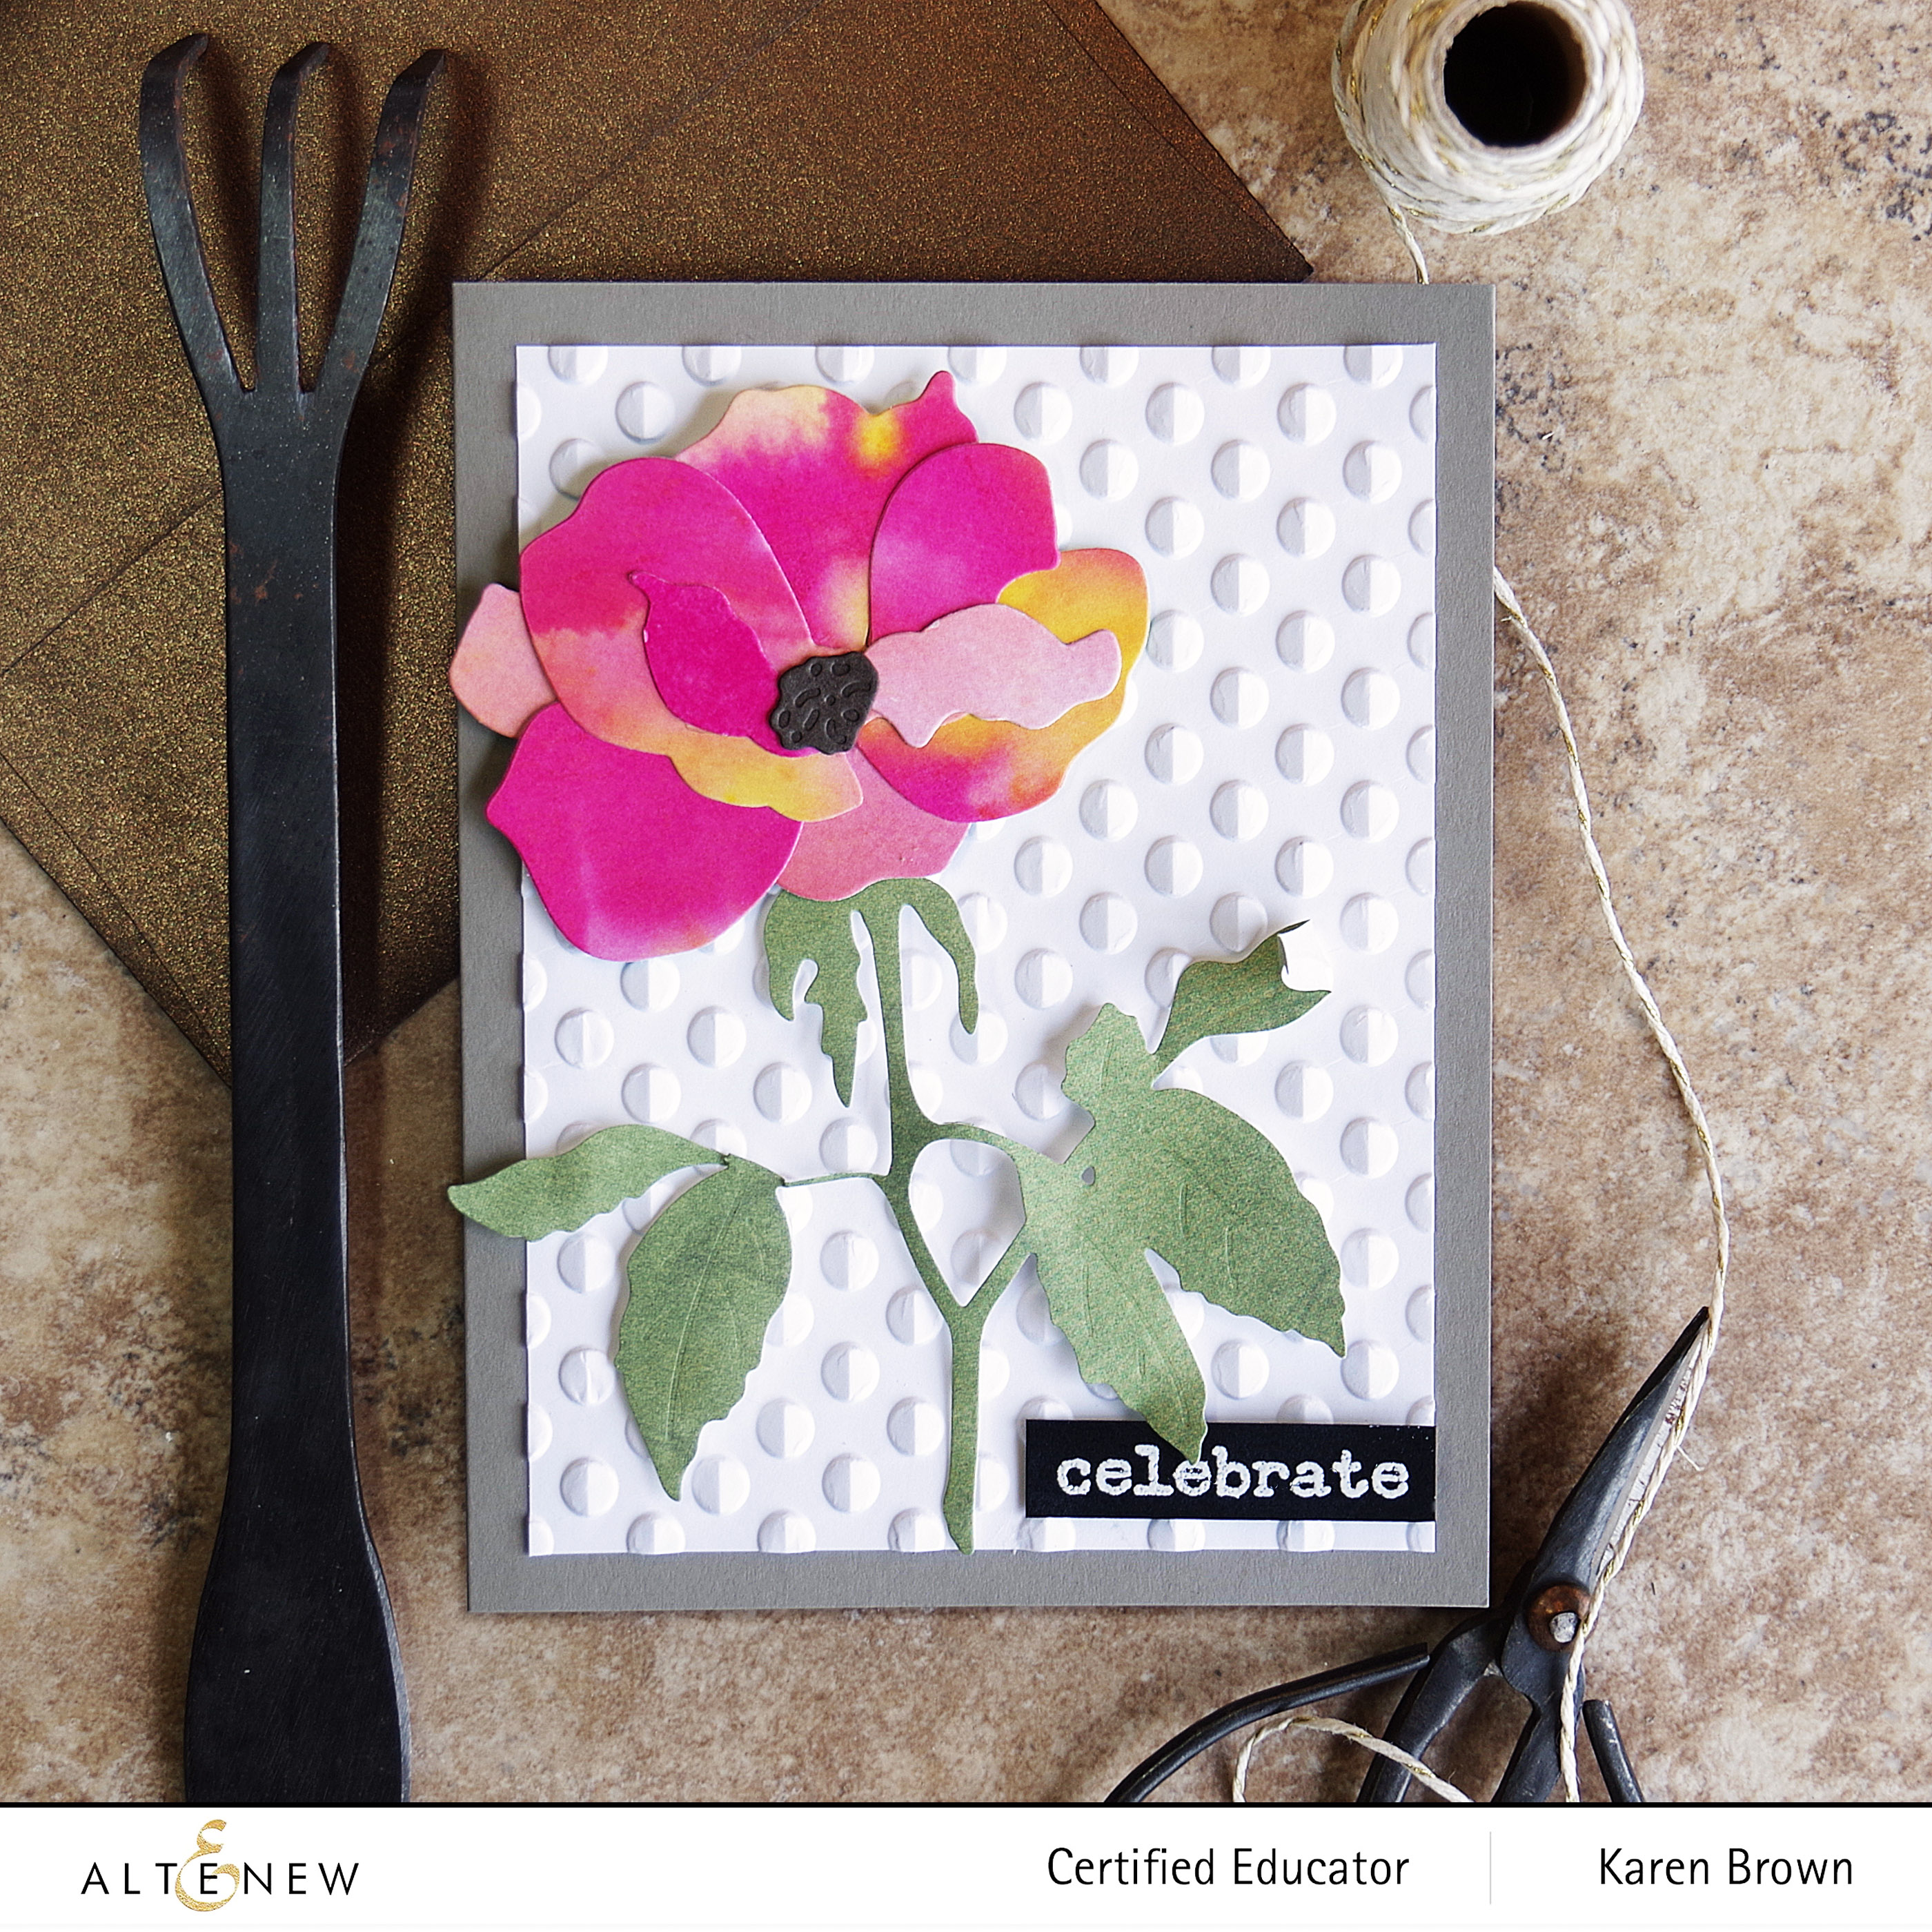 Altenew Playful Circles 3D Embossing Folder + Craft A Flower Garden Rose + Handmade Card